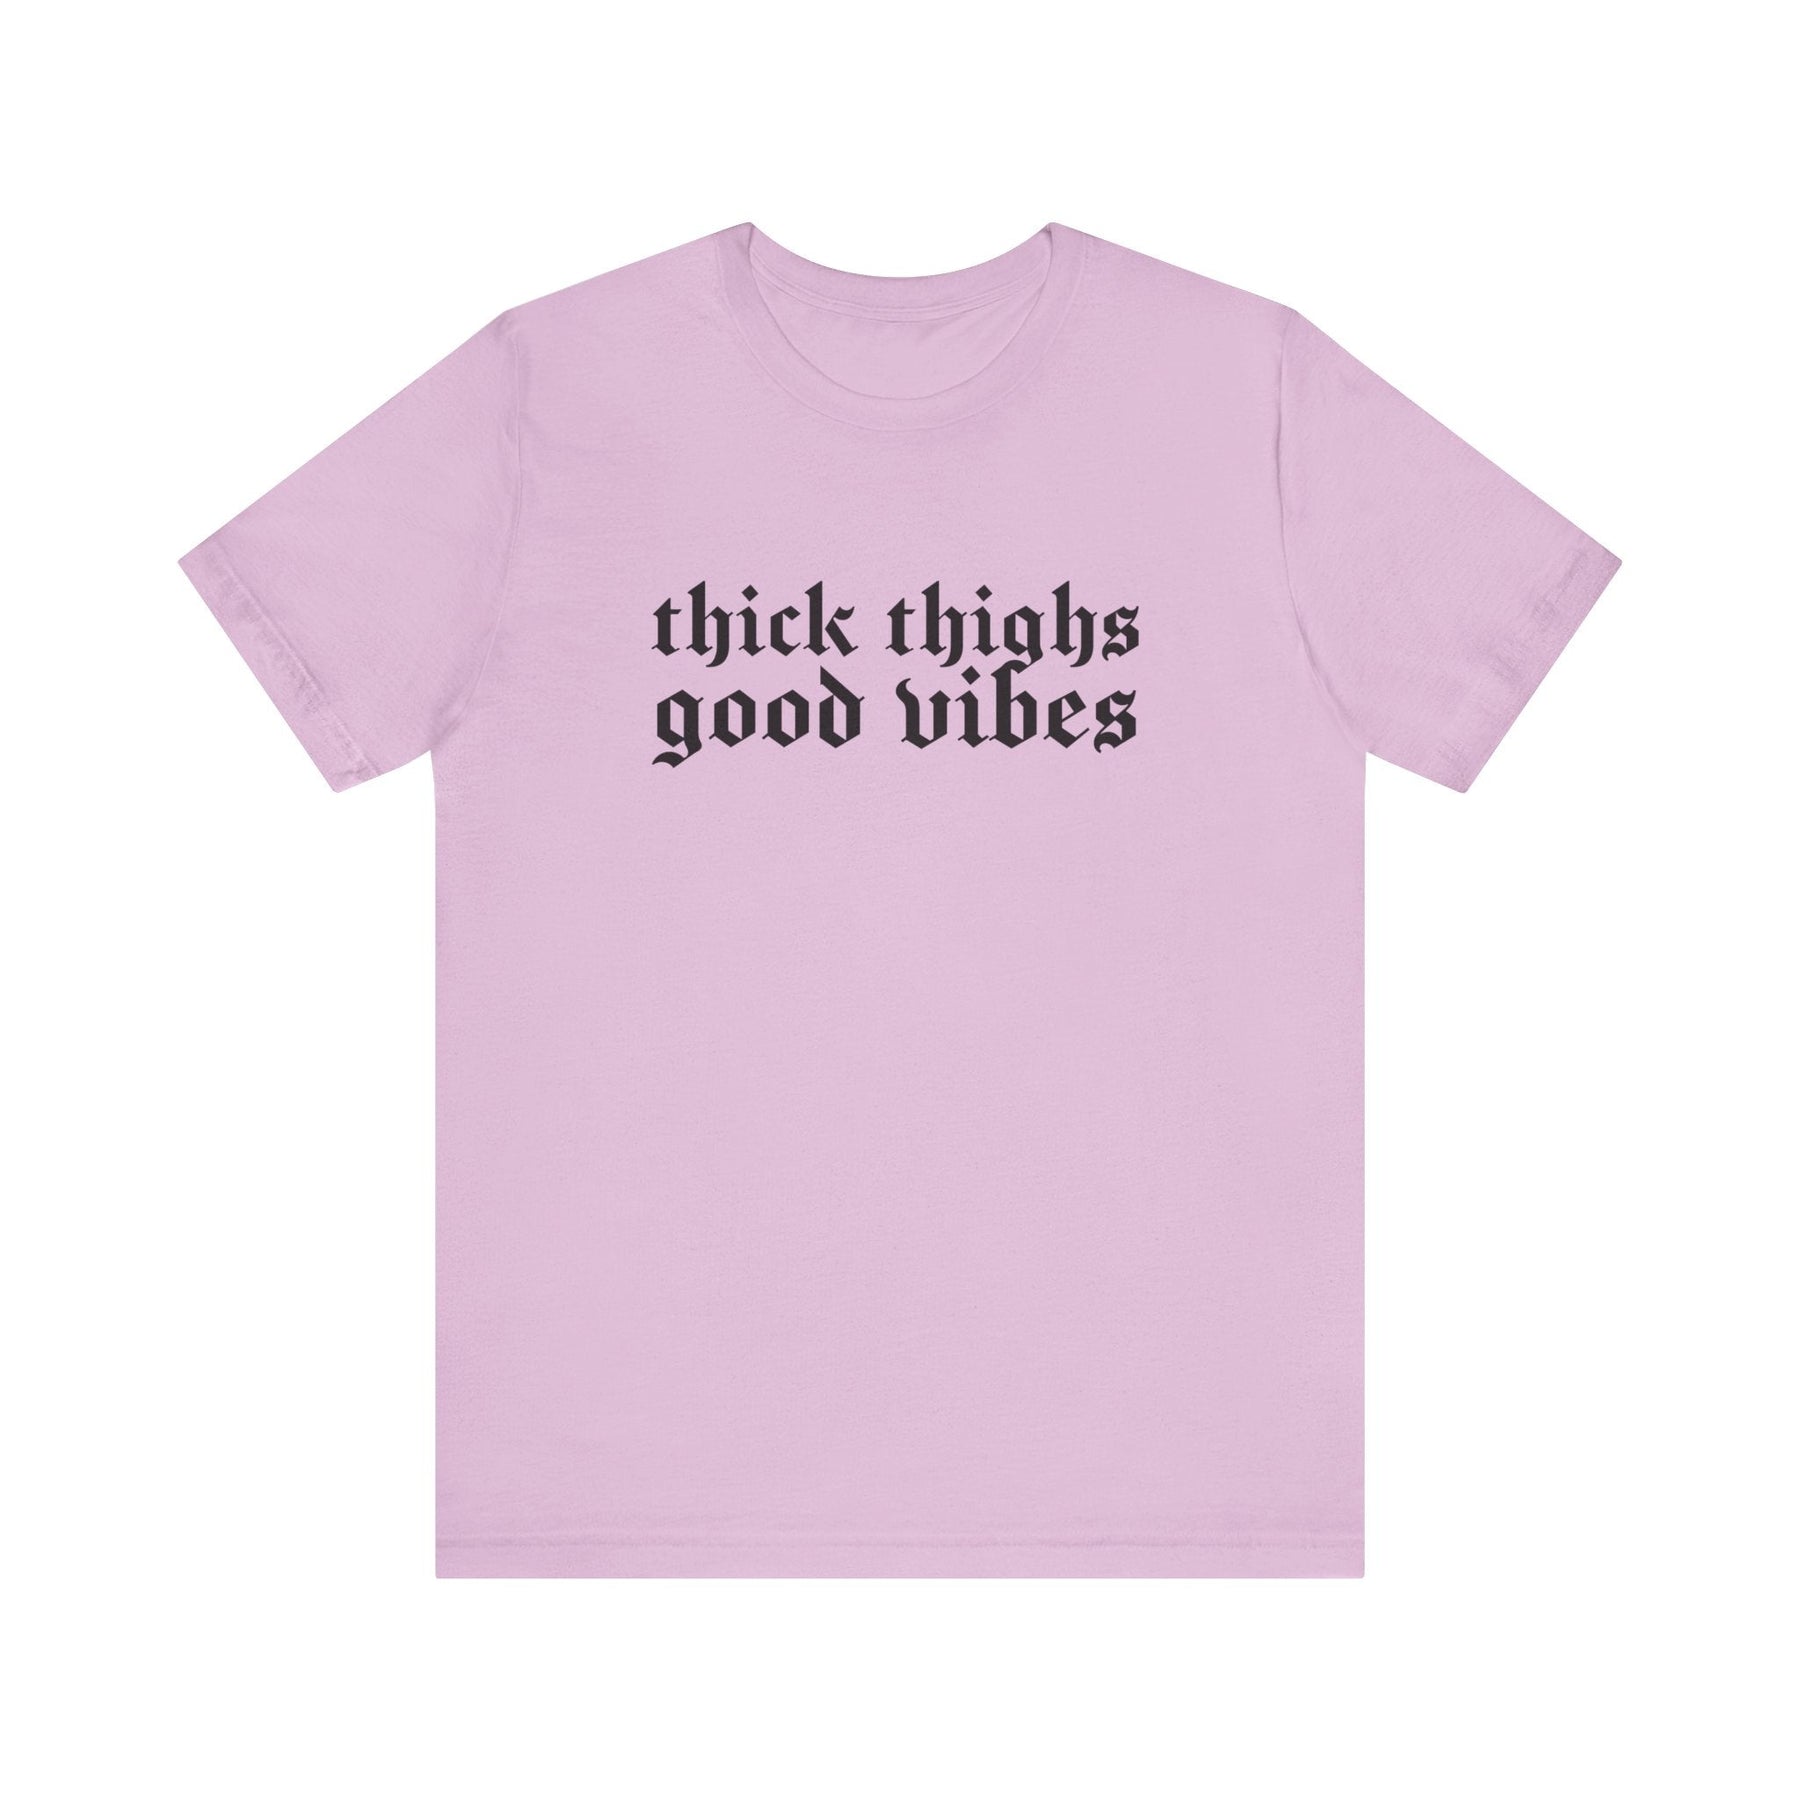 Thick Thighs, Good Vibes T-Shirt - Goth Cloth Co.T-Shirt19696668113431348767